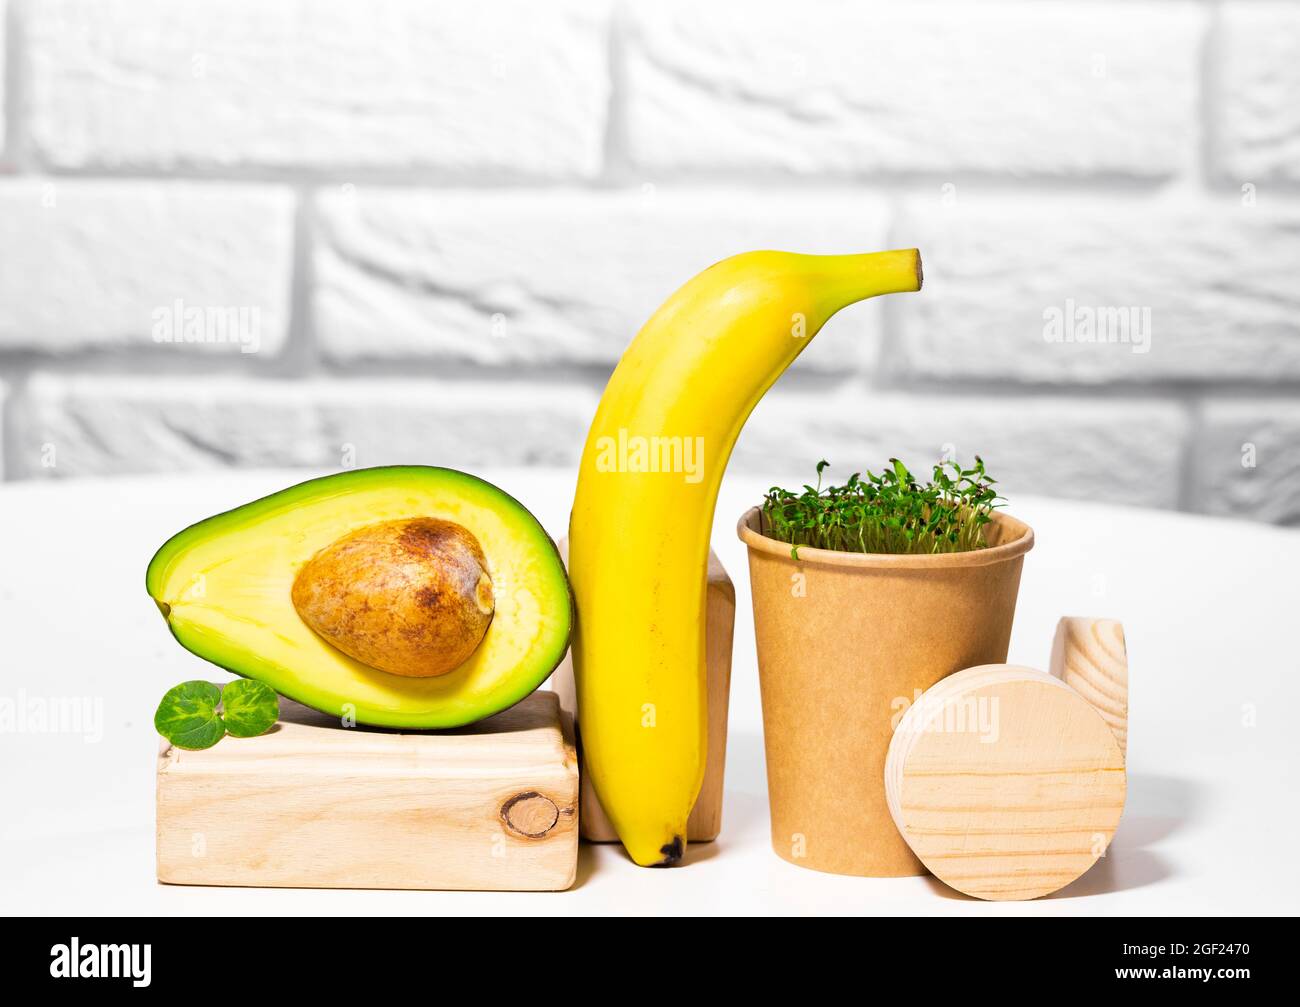 Vita morta creativa con avocado, banana e micro verde sul backgroun con stand e podi in legno. Equilibrio cibo sano. Dadi bilanciati Foto Stock